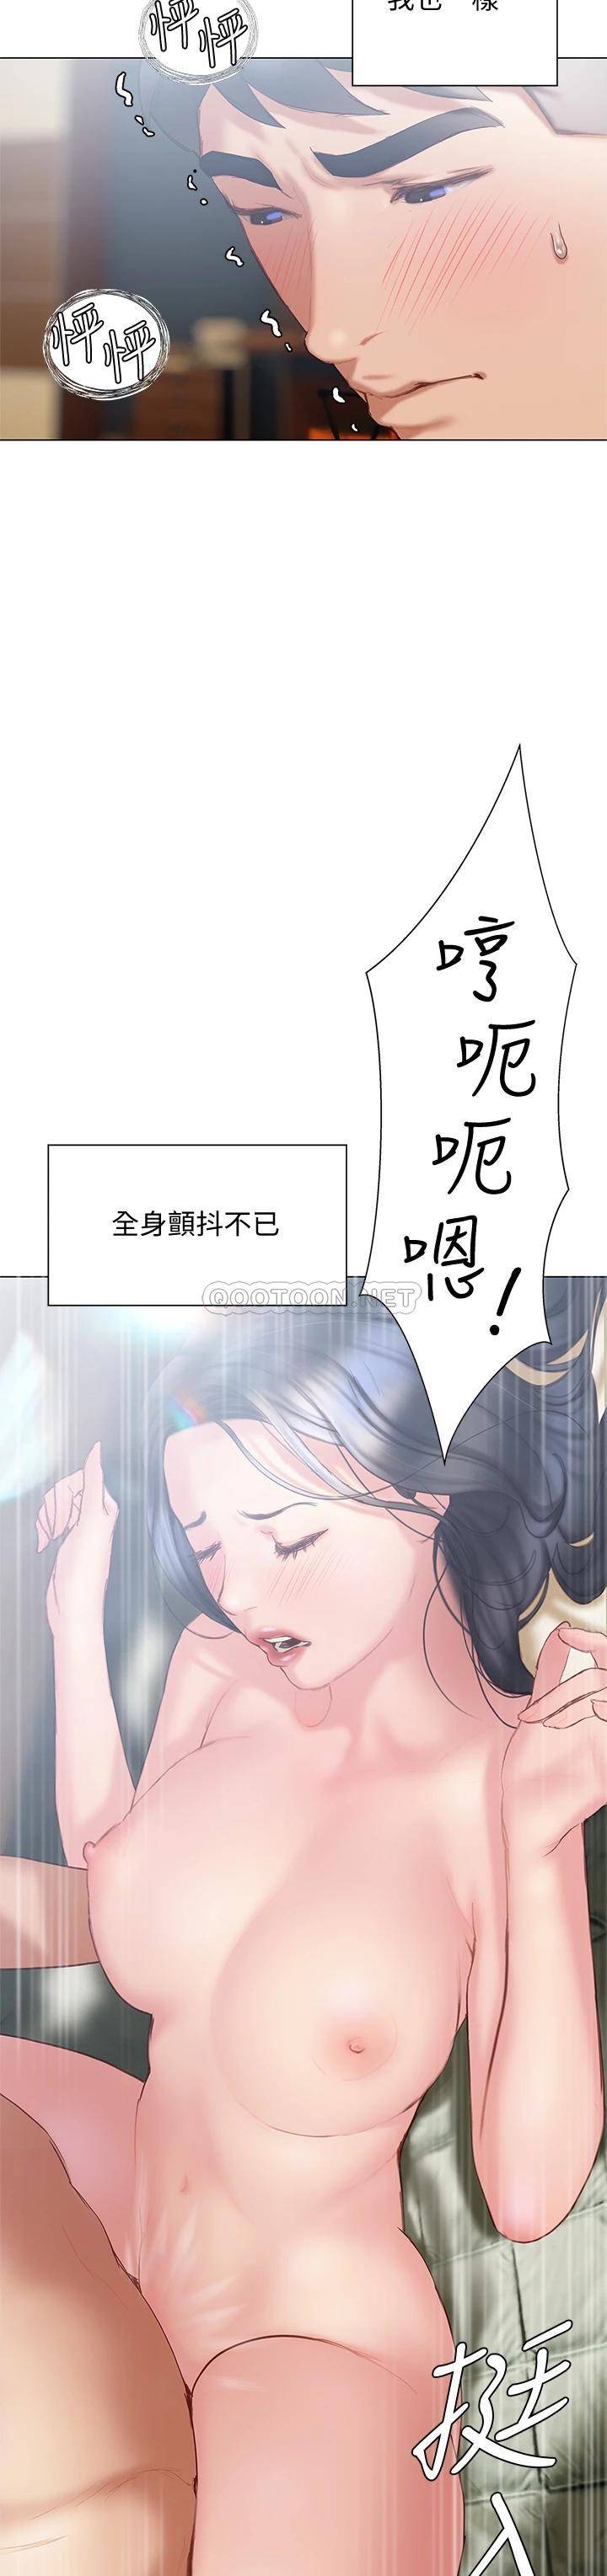 韩国污漫画 終曖昧結 第32话初恋心动不已的第一次 39